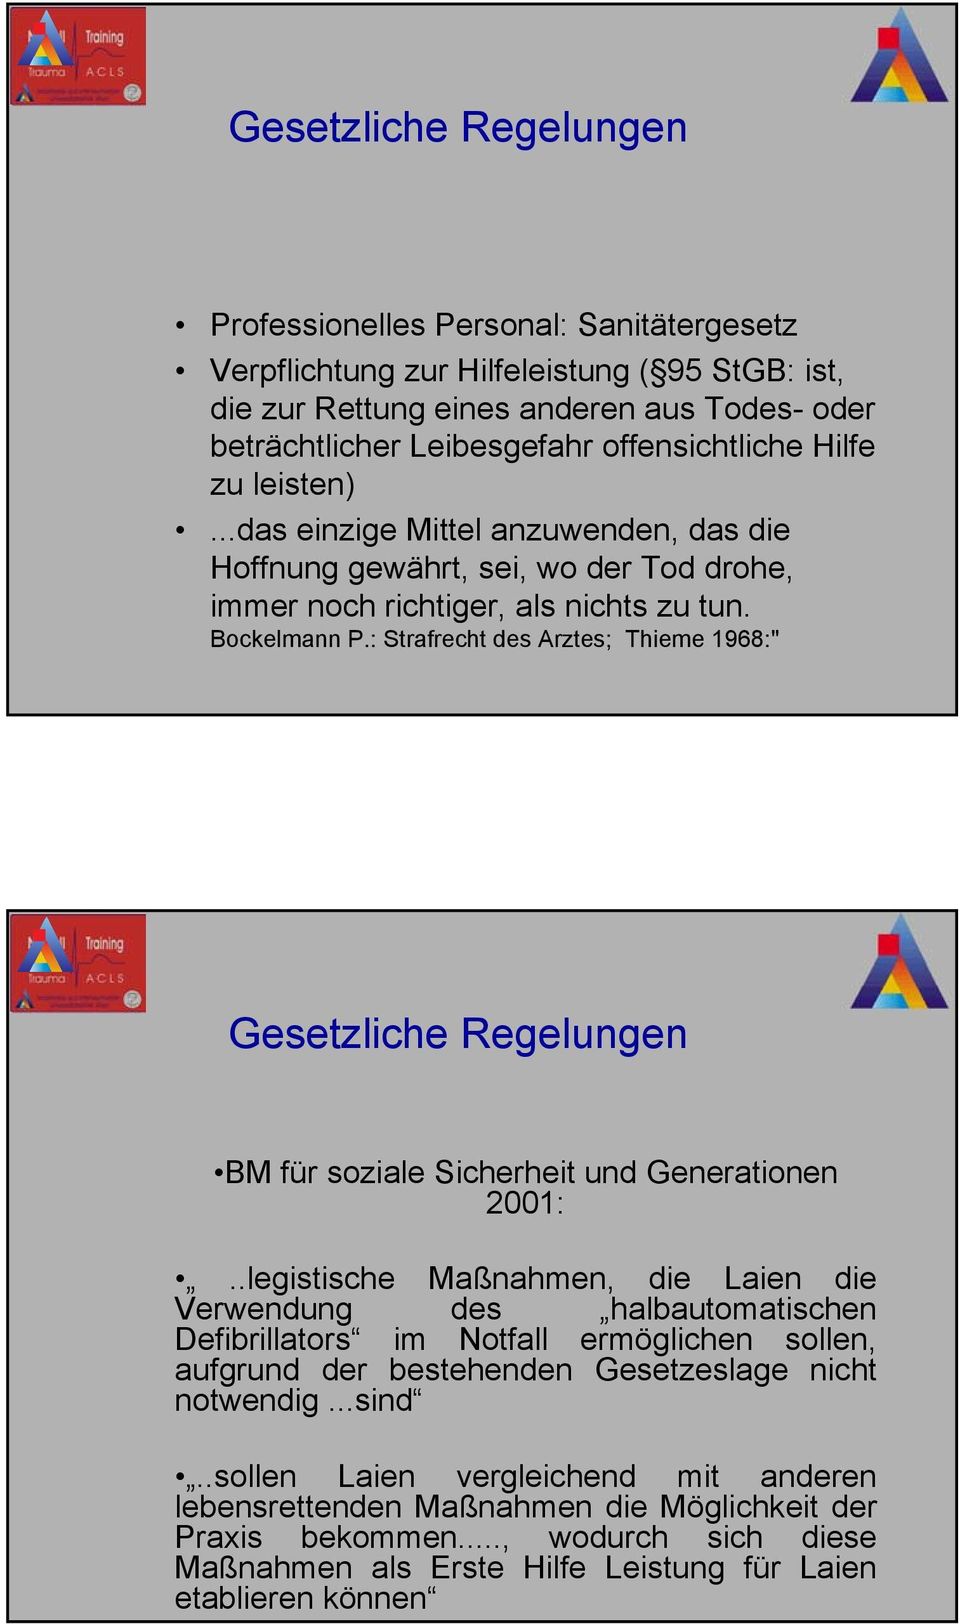 : Strafrecht des Arztes; Thieme 1968:" Gesetzliche Regelungen BM für soziale Sicherheit und Generationen 2001:.